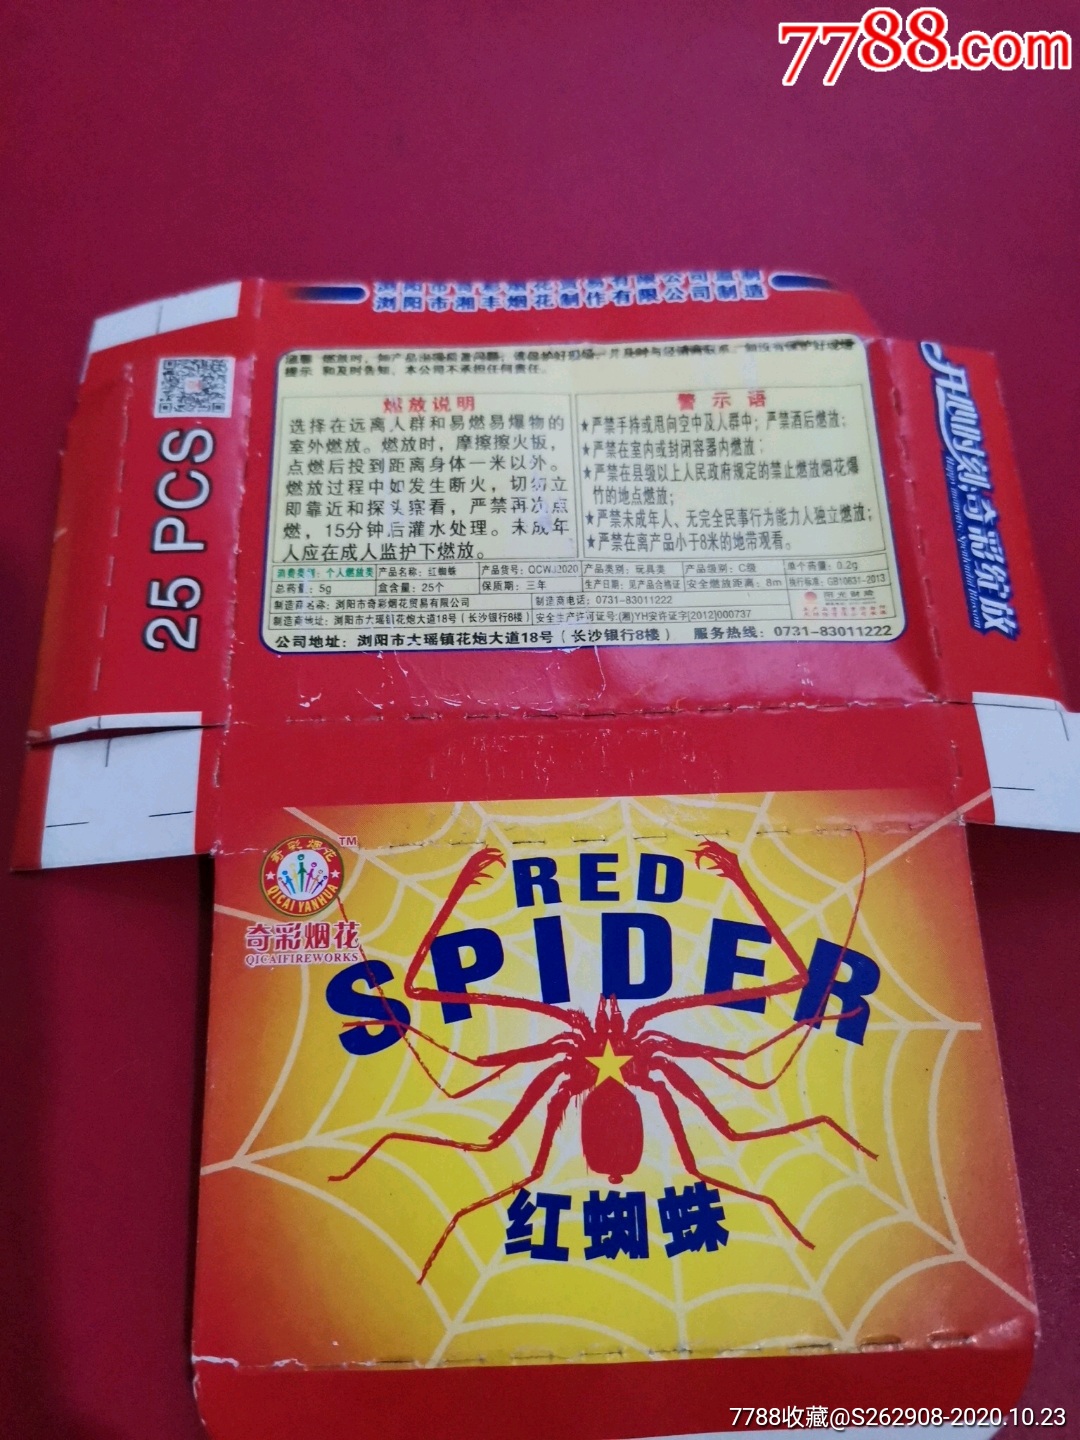 红蜘蛛擦炮盒标仅限收藏